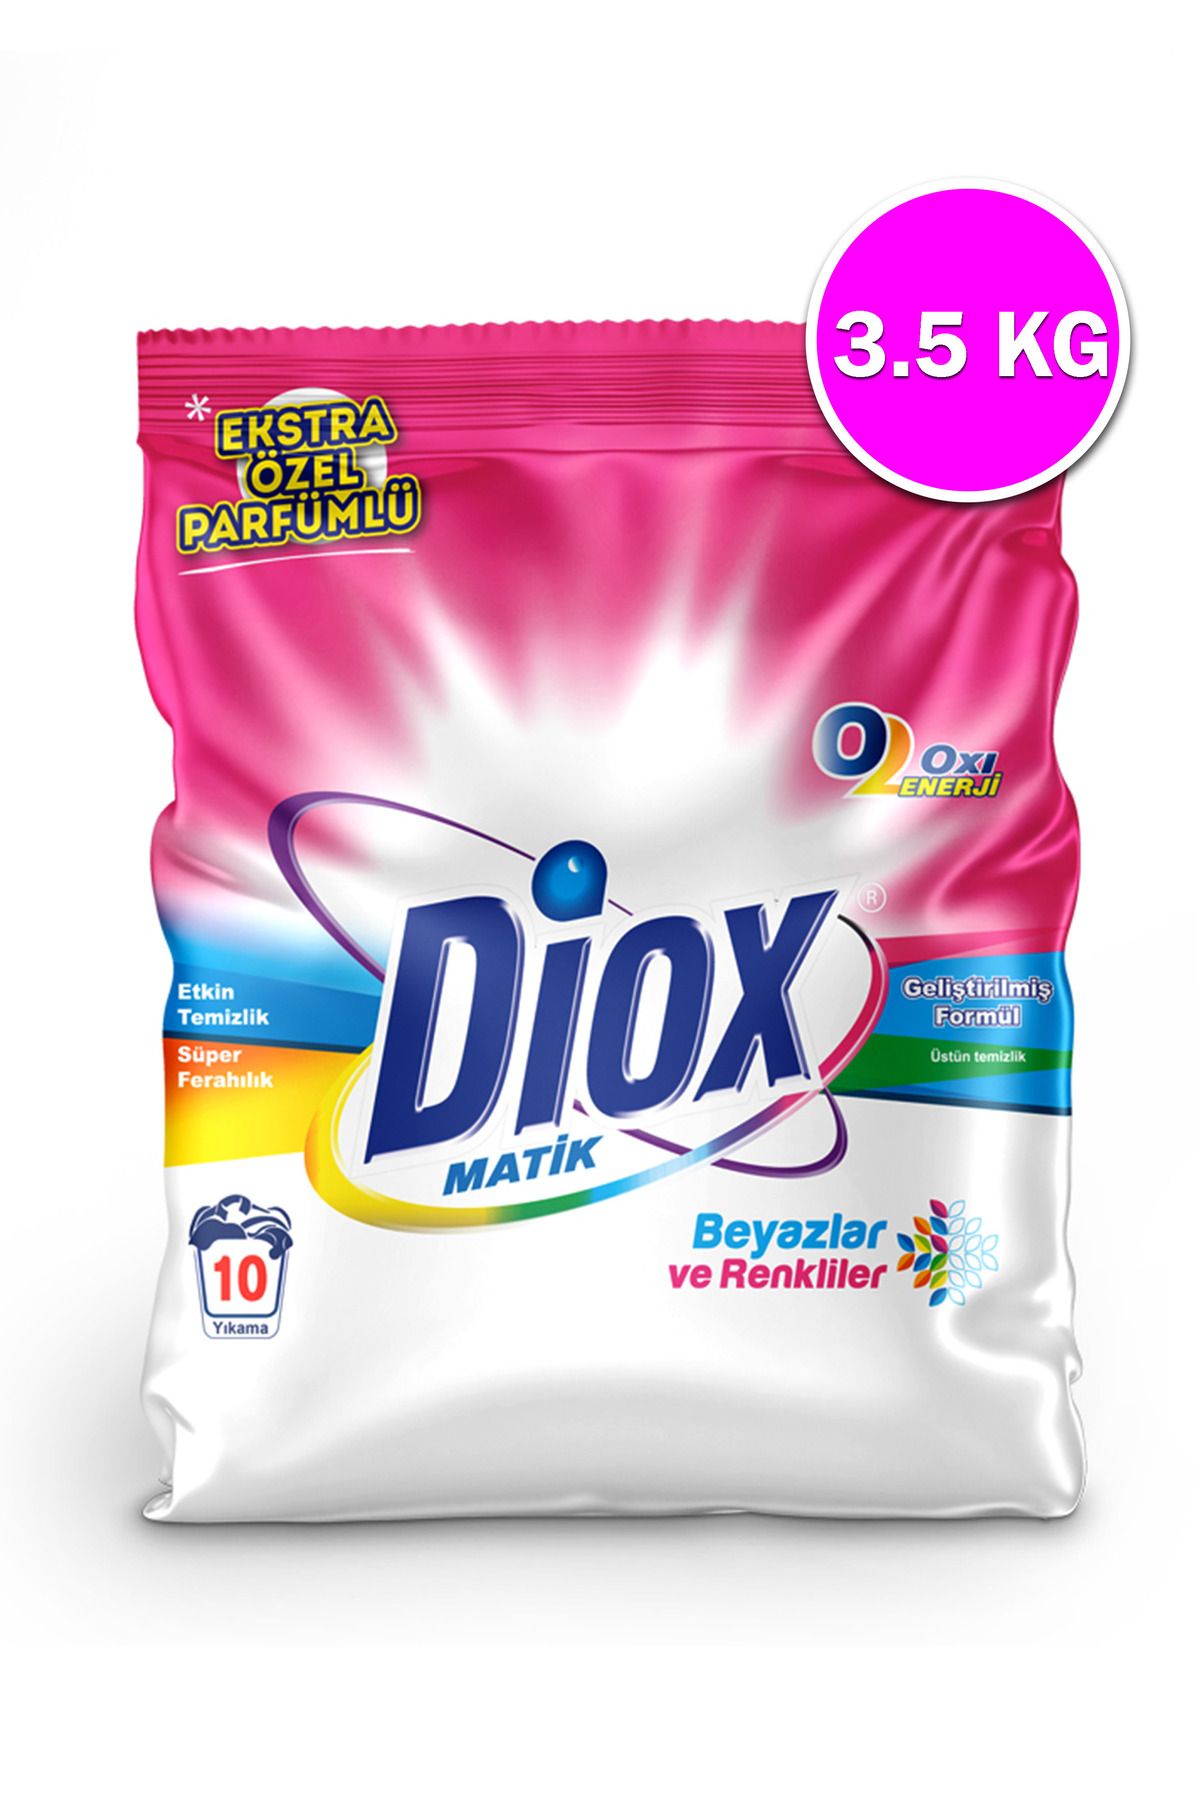 Diox Otomatik yıkama tozu beyazlar ve renklıler - 3500g